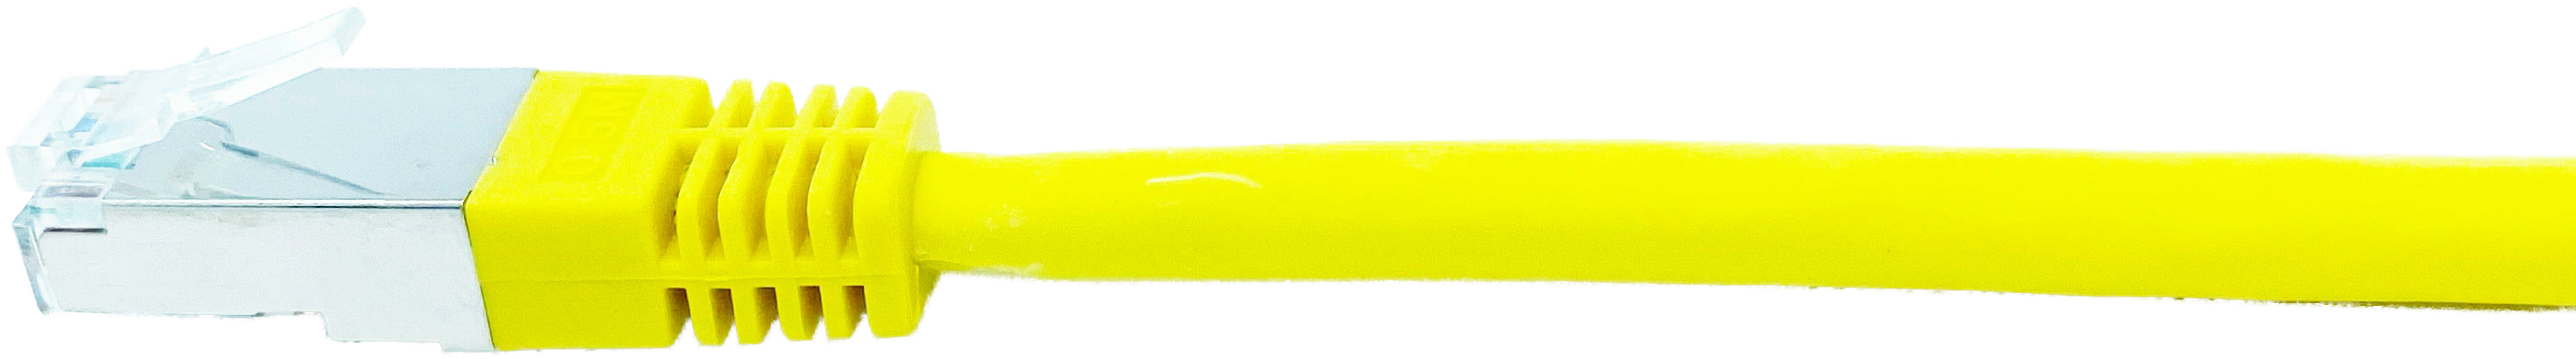 Kupferpatchkabel Cat.6 250MHz 10,0m gelb